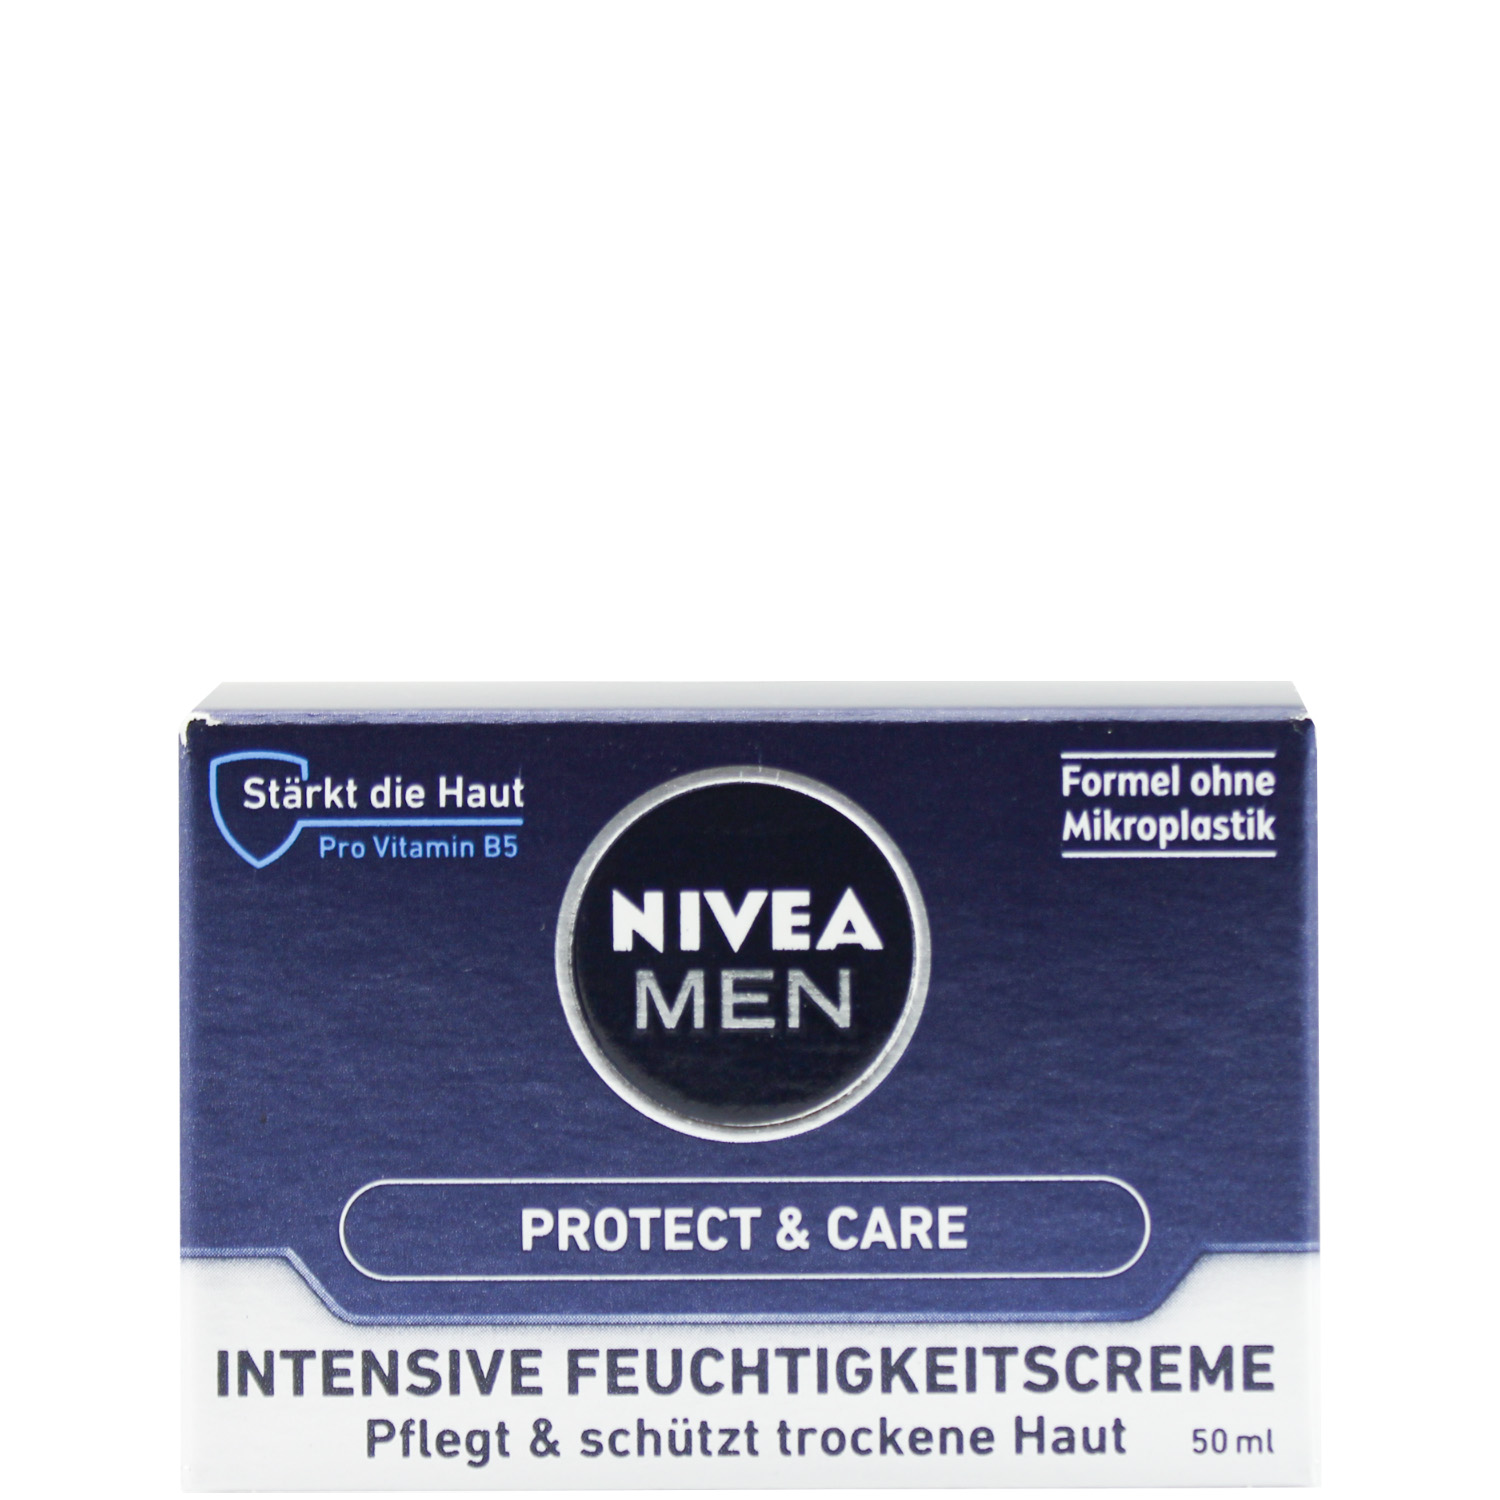 Nivea Men Protect & Care Intensive Feuchtigkeitscreme 50ml